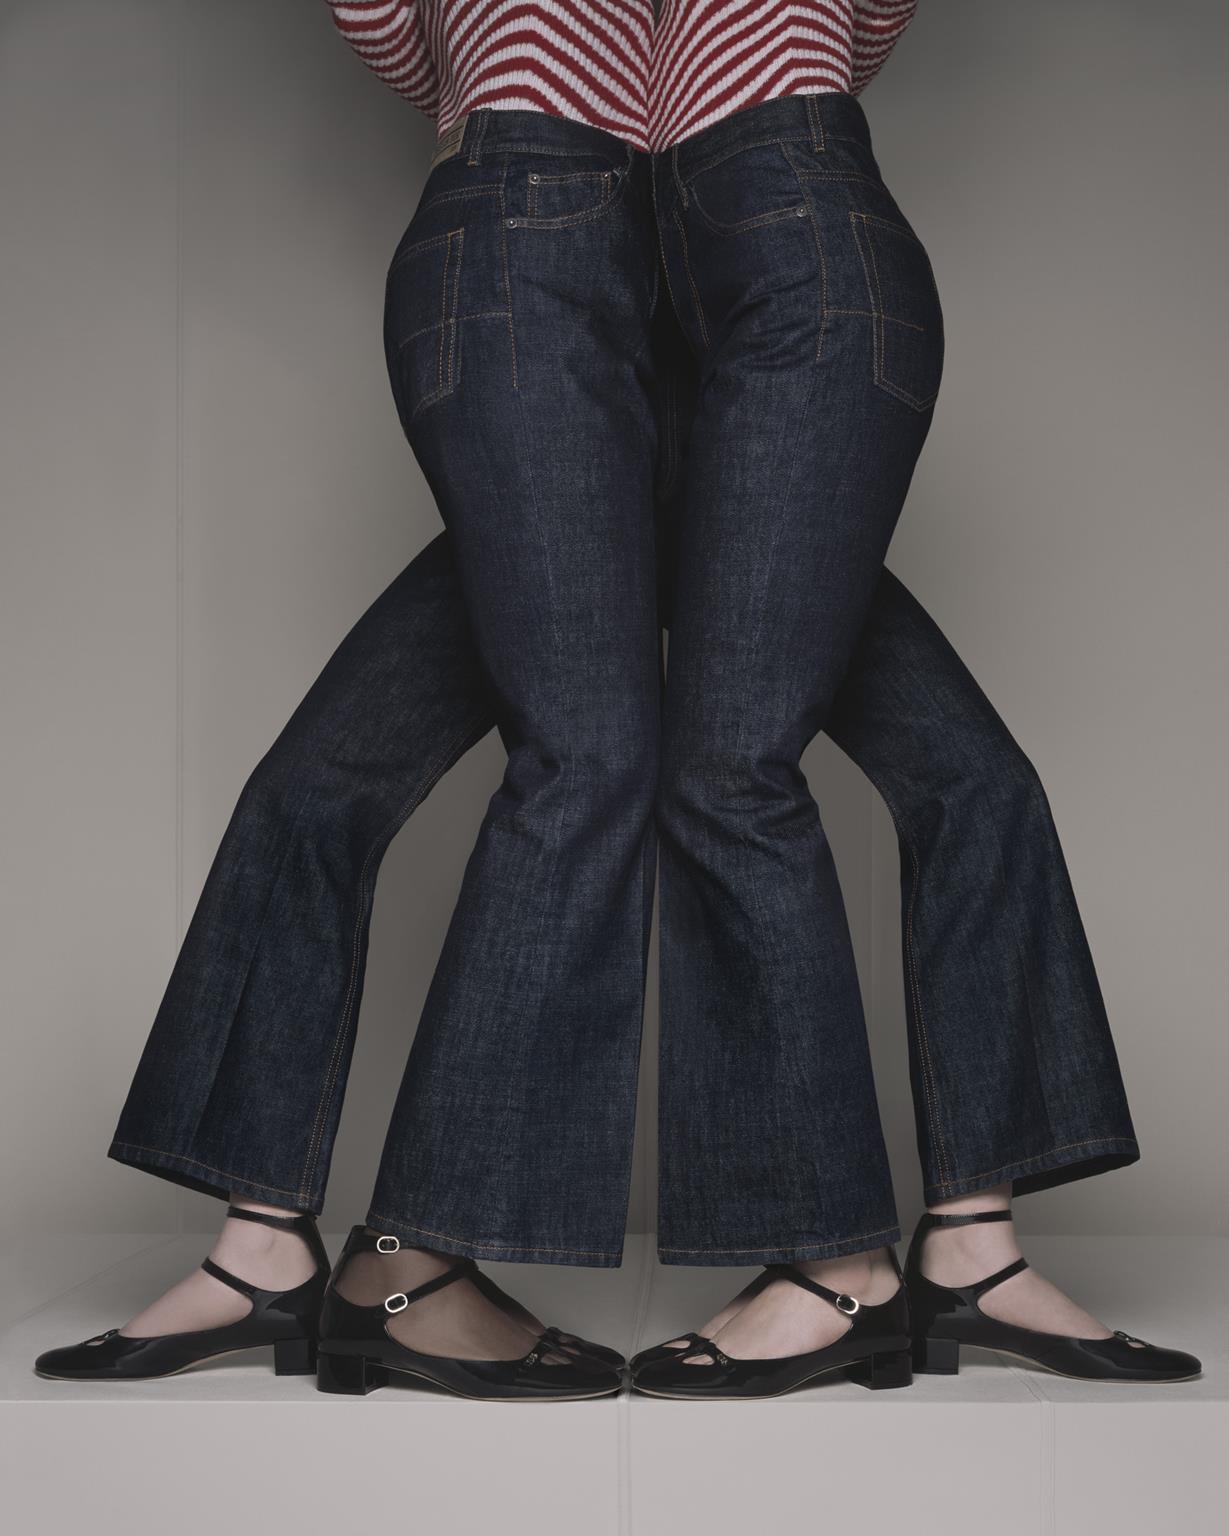 dior jeans - ph. © Brigitte Niedermair